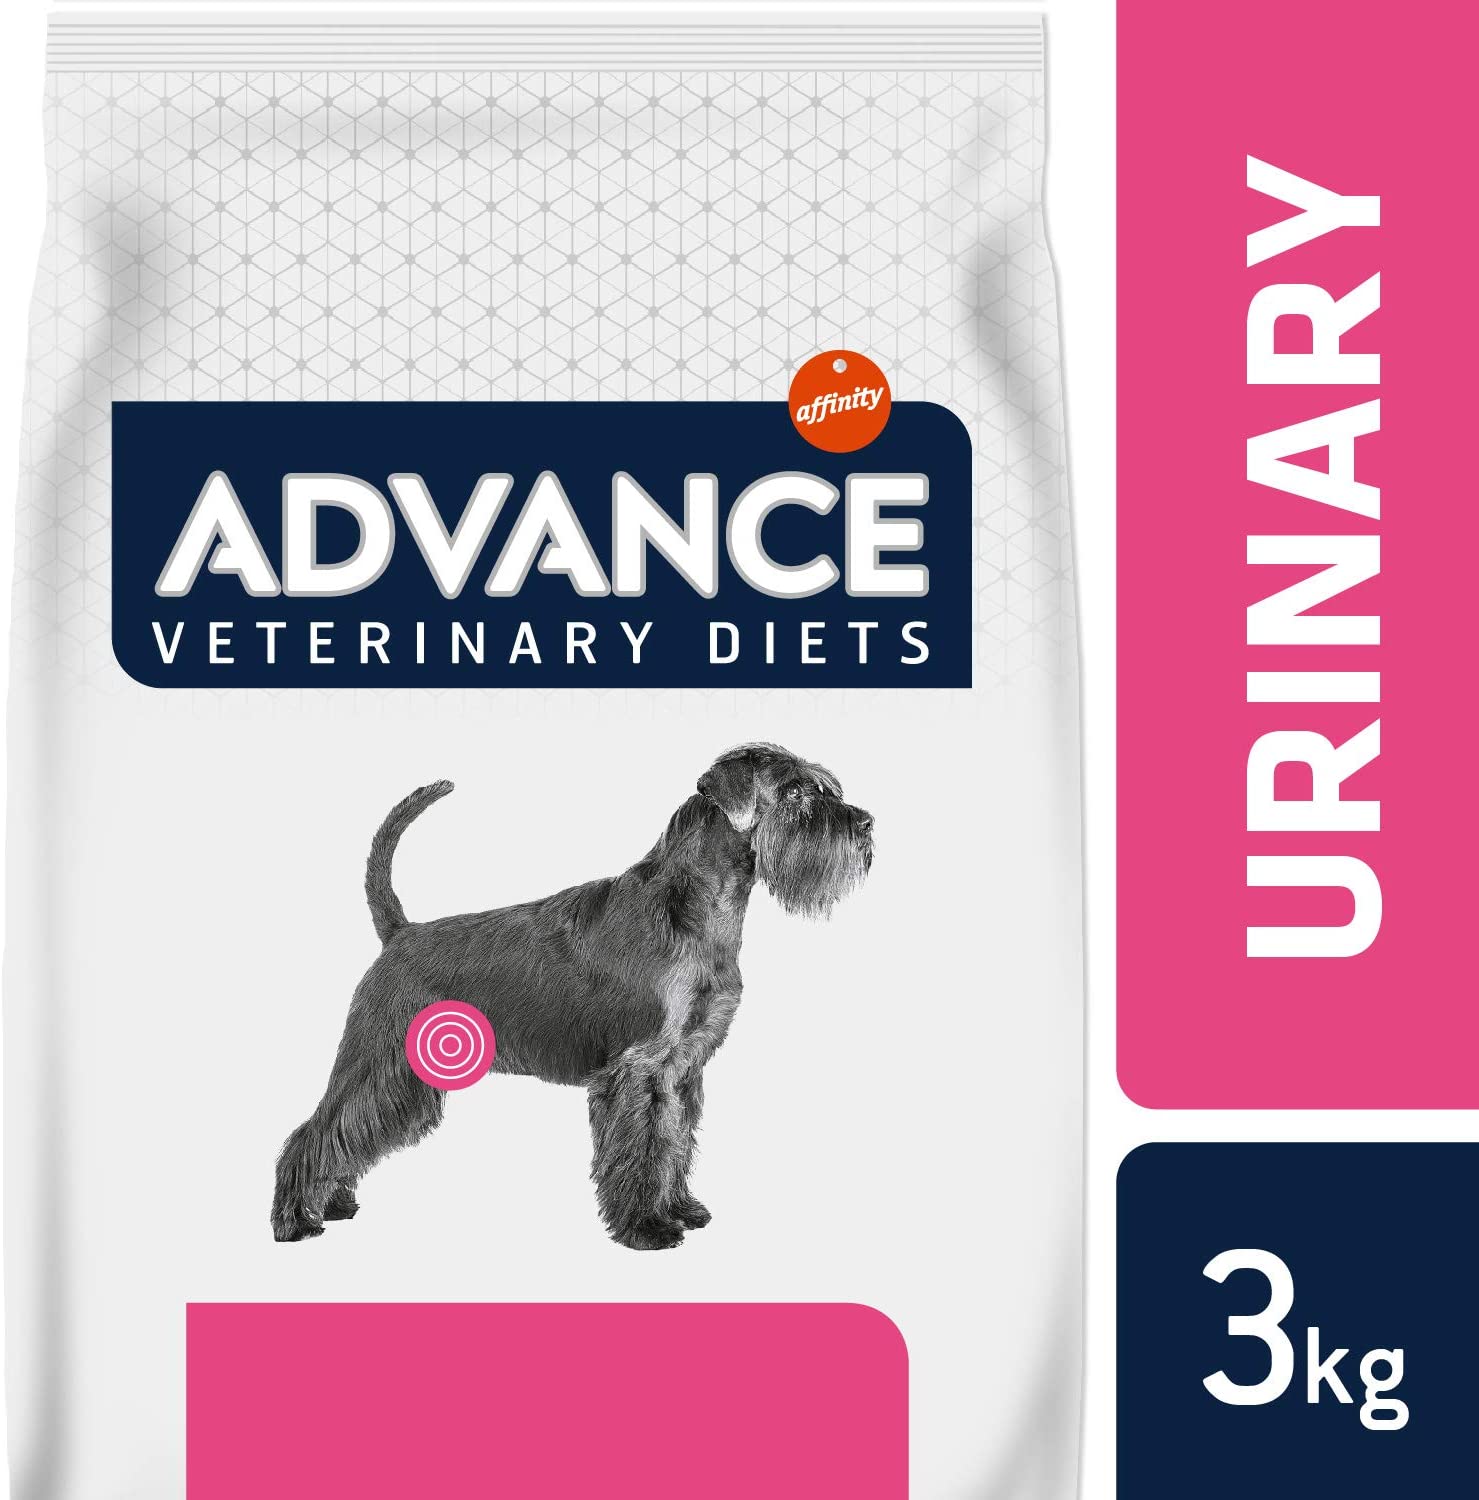  Advance Veterinary Diets Urinary Pienso para Perros con Problemas Urinarios 3 Kg 